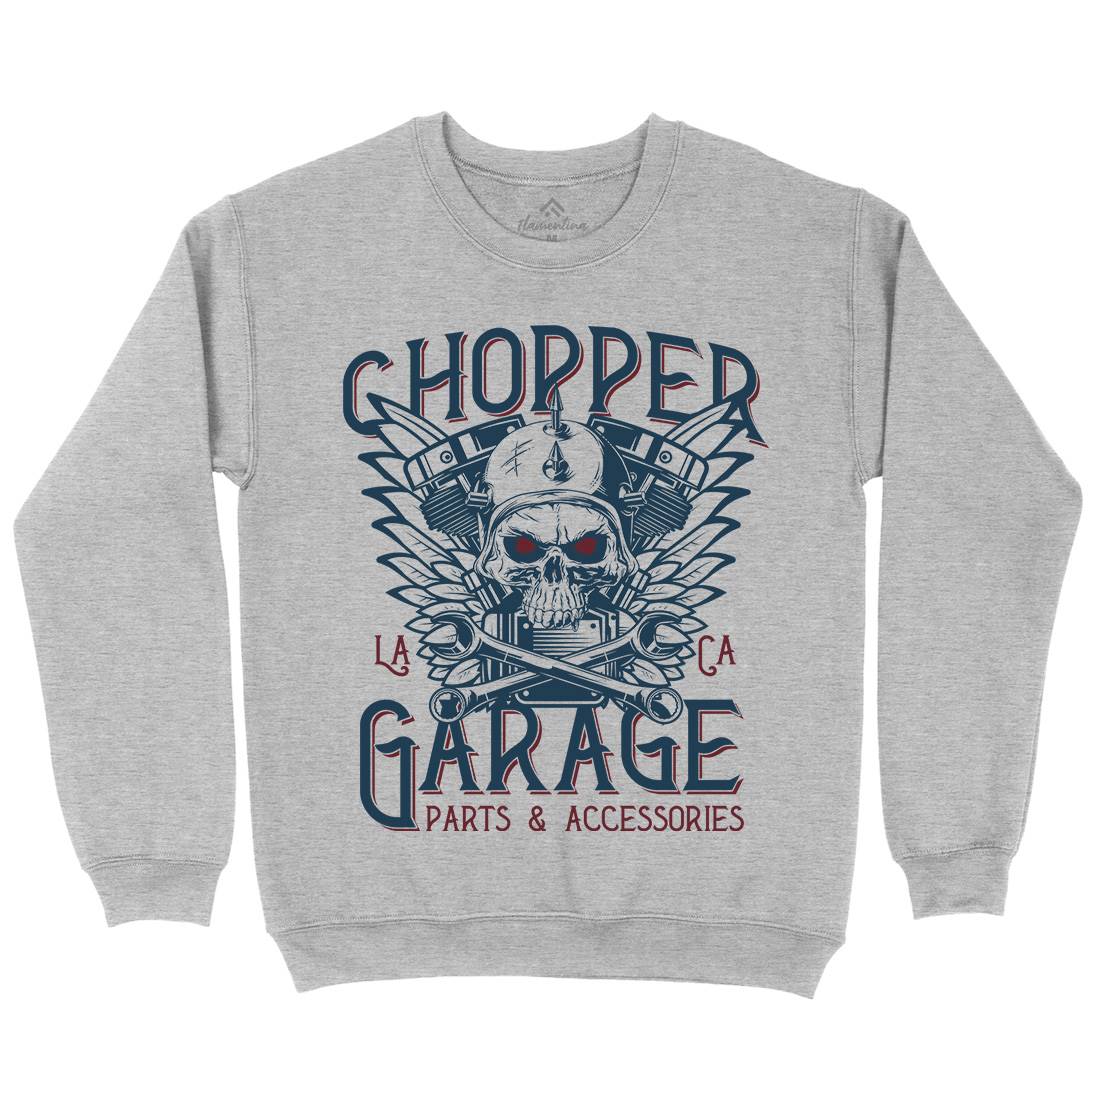 Chopper Garage Kids Crew Neck Sweatshirt Motorcycles D918